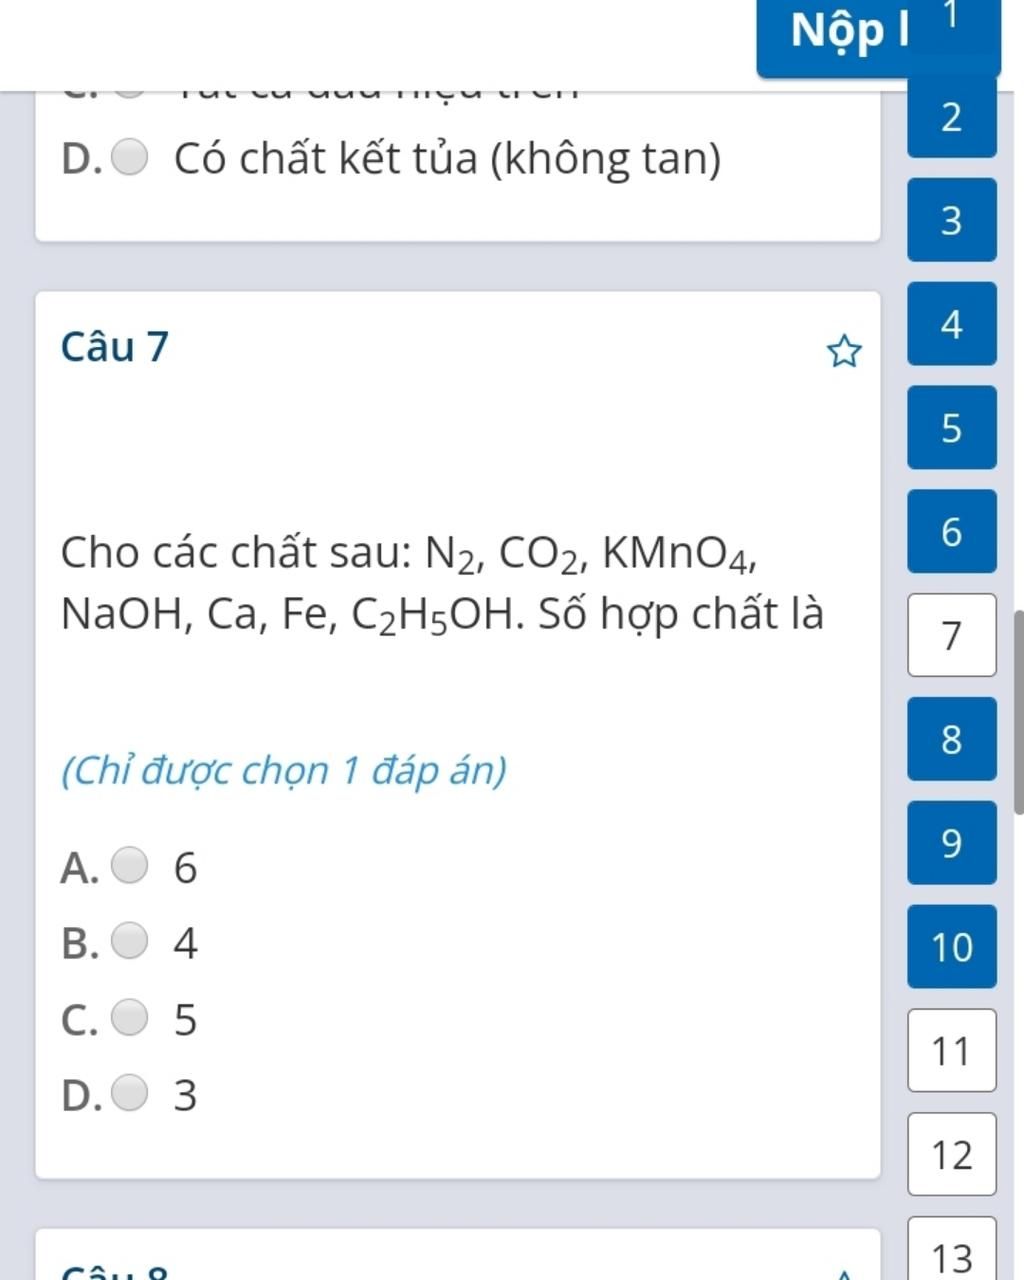 Cách phân tích chất c2h5oh + naoh + kmno4 bằng phương pháp hóa học